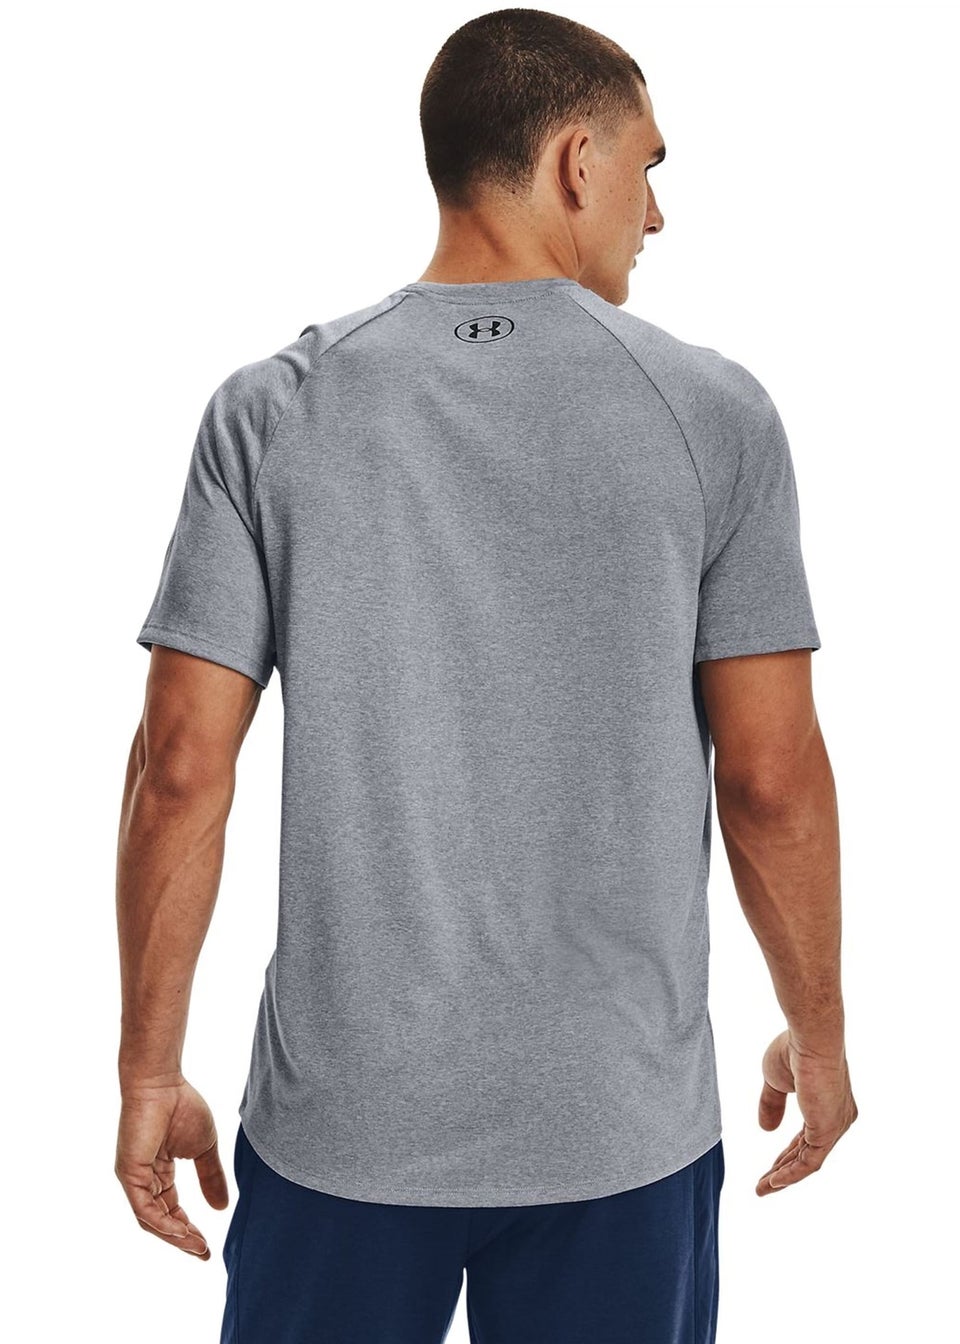 Under Armour Light Grey Tech T-Shirt